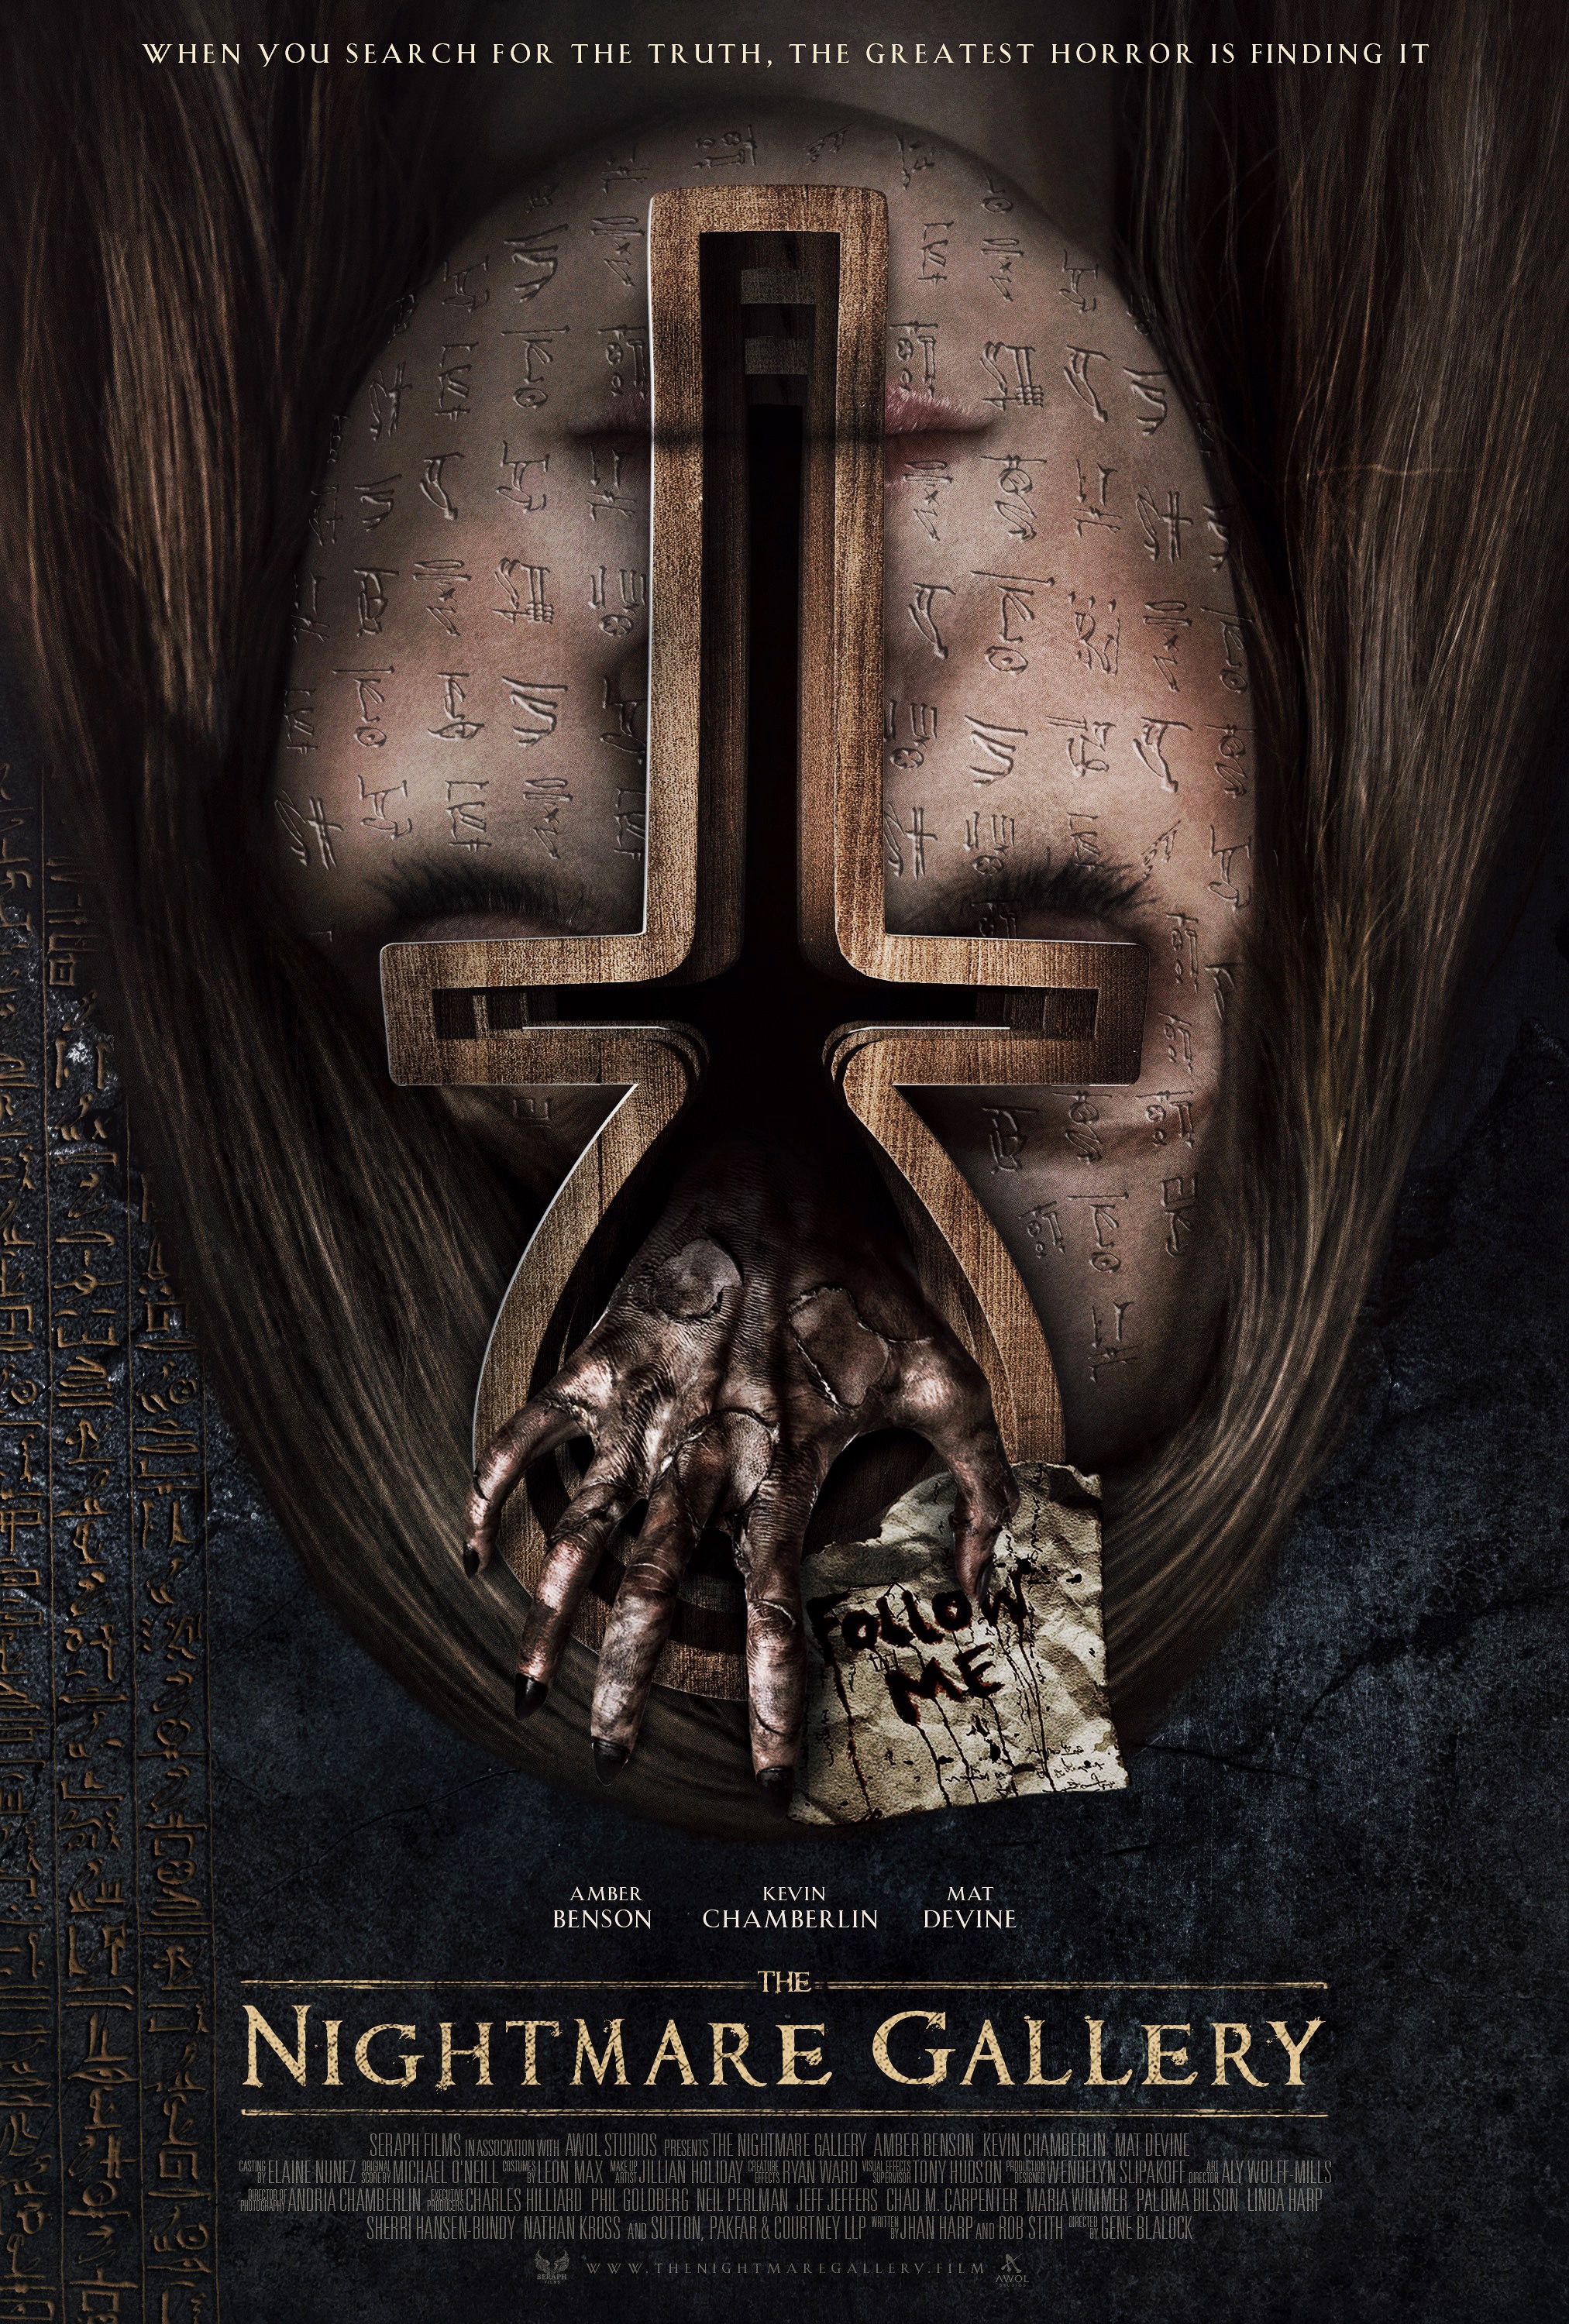 Nonton film The Nightmare Gallery layarkaca21 indoxx1 ganool online streaming terbaru